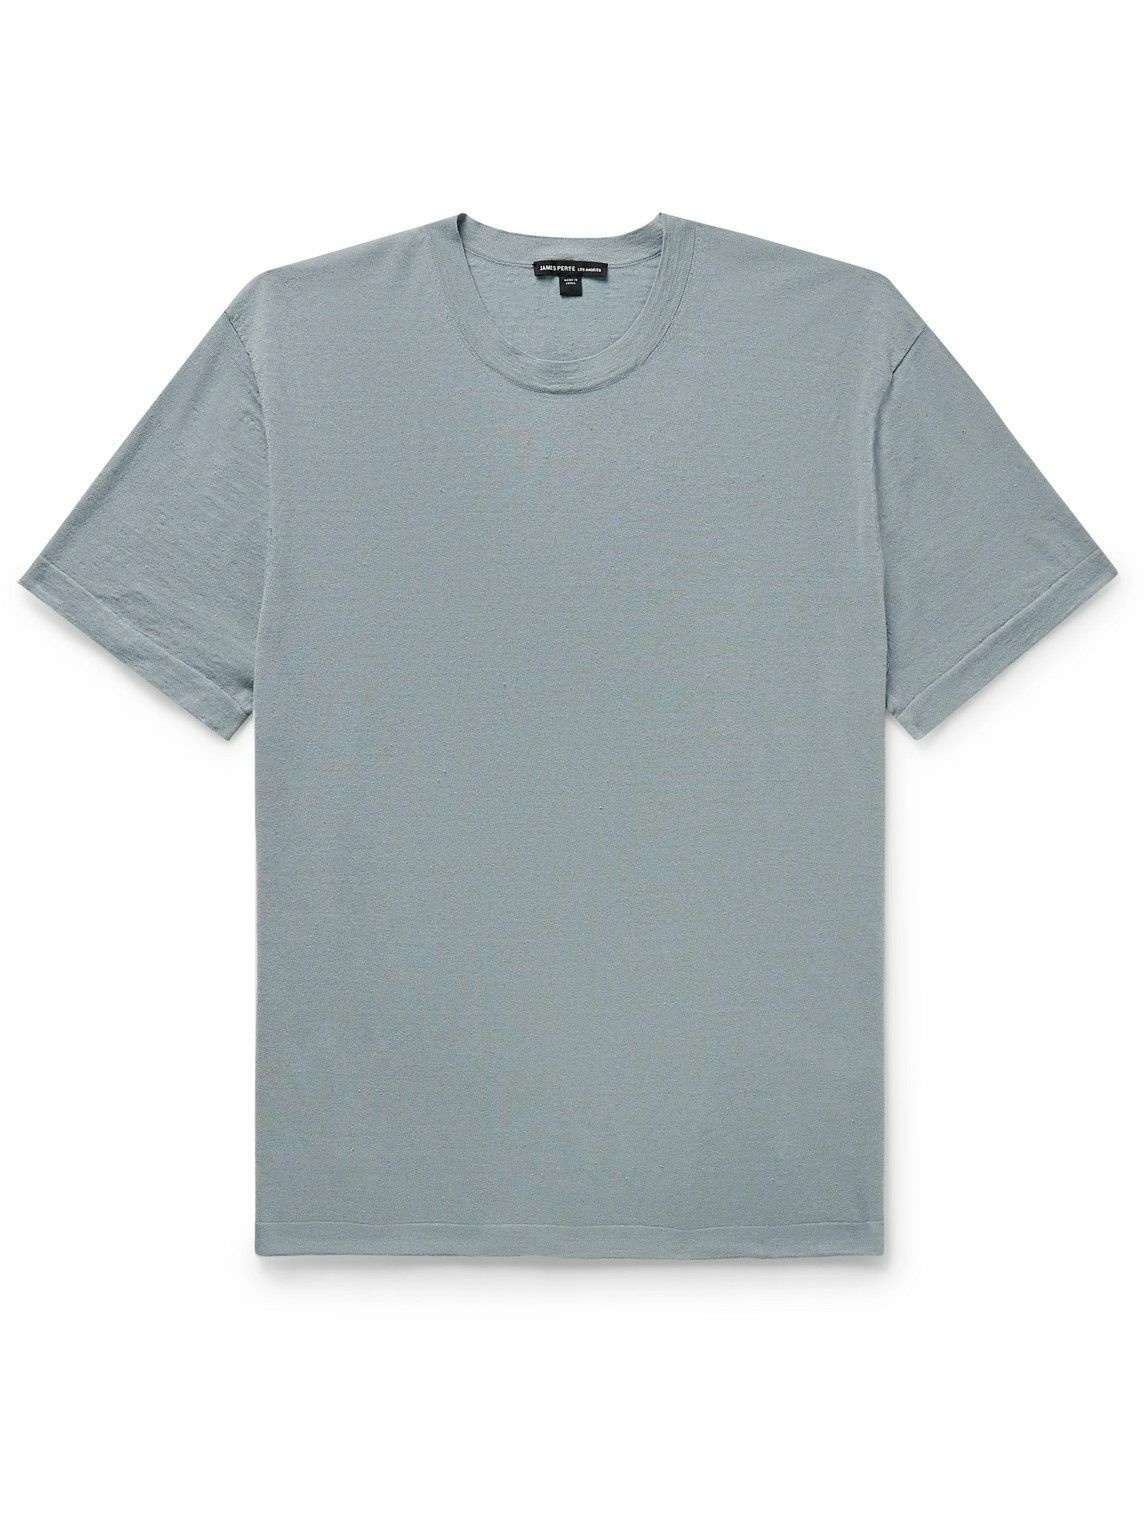 James Perse - Linen-Blend Jersey T-Shirt - Blue James Perse